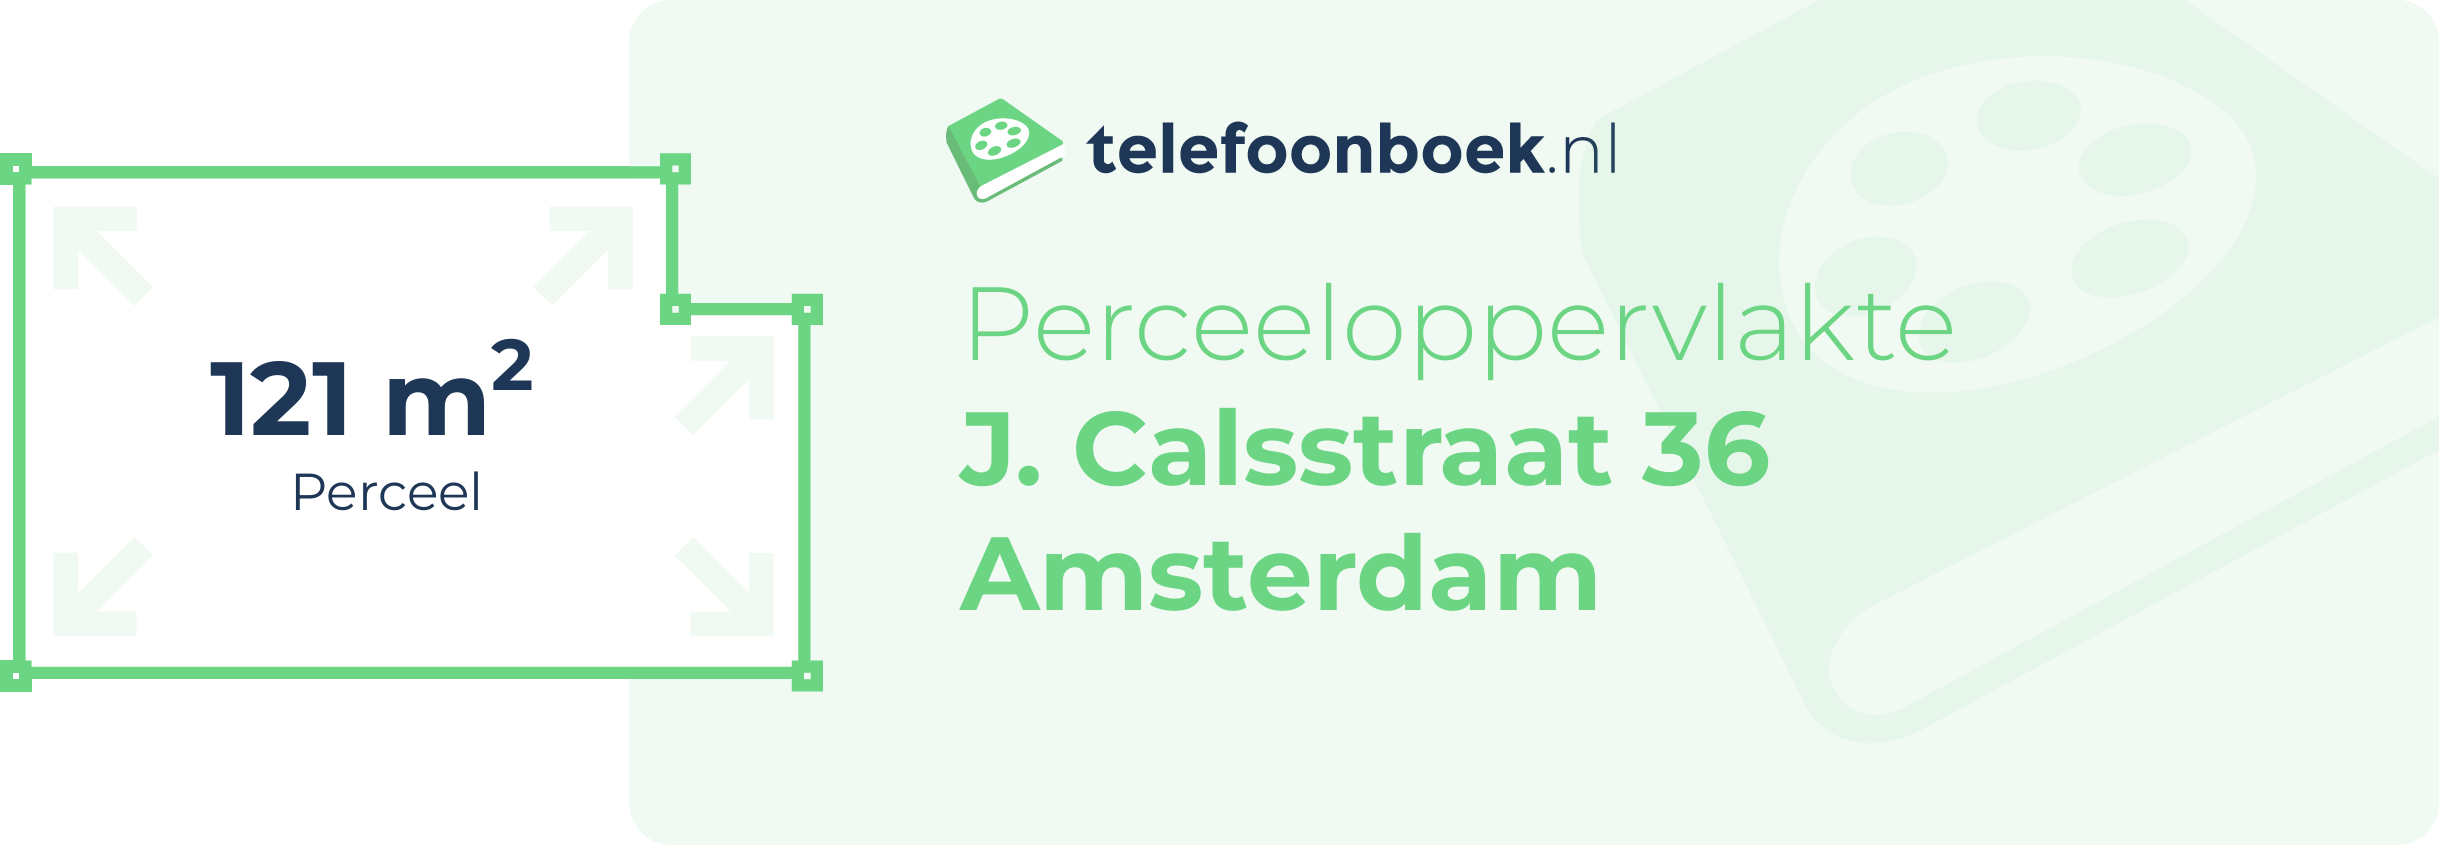 Perceeloppervlakte J. Calsstraat 36 Amsterdam